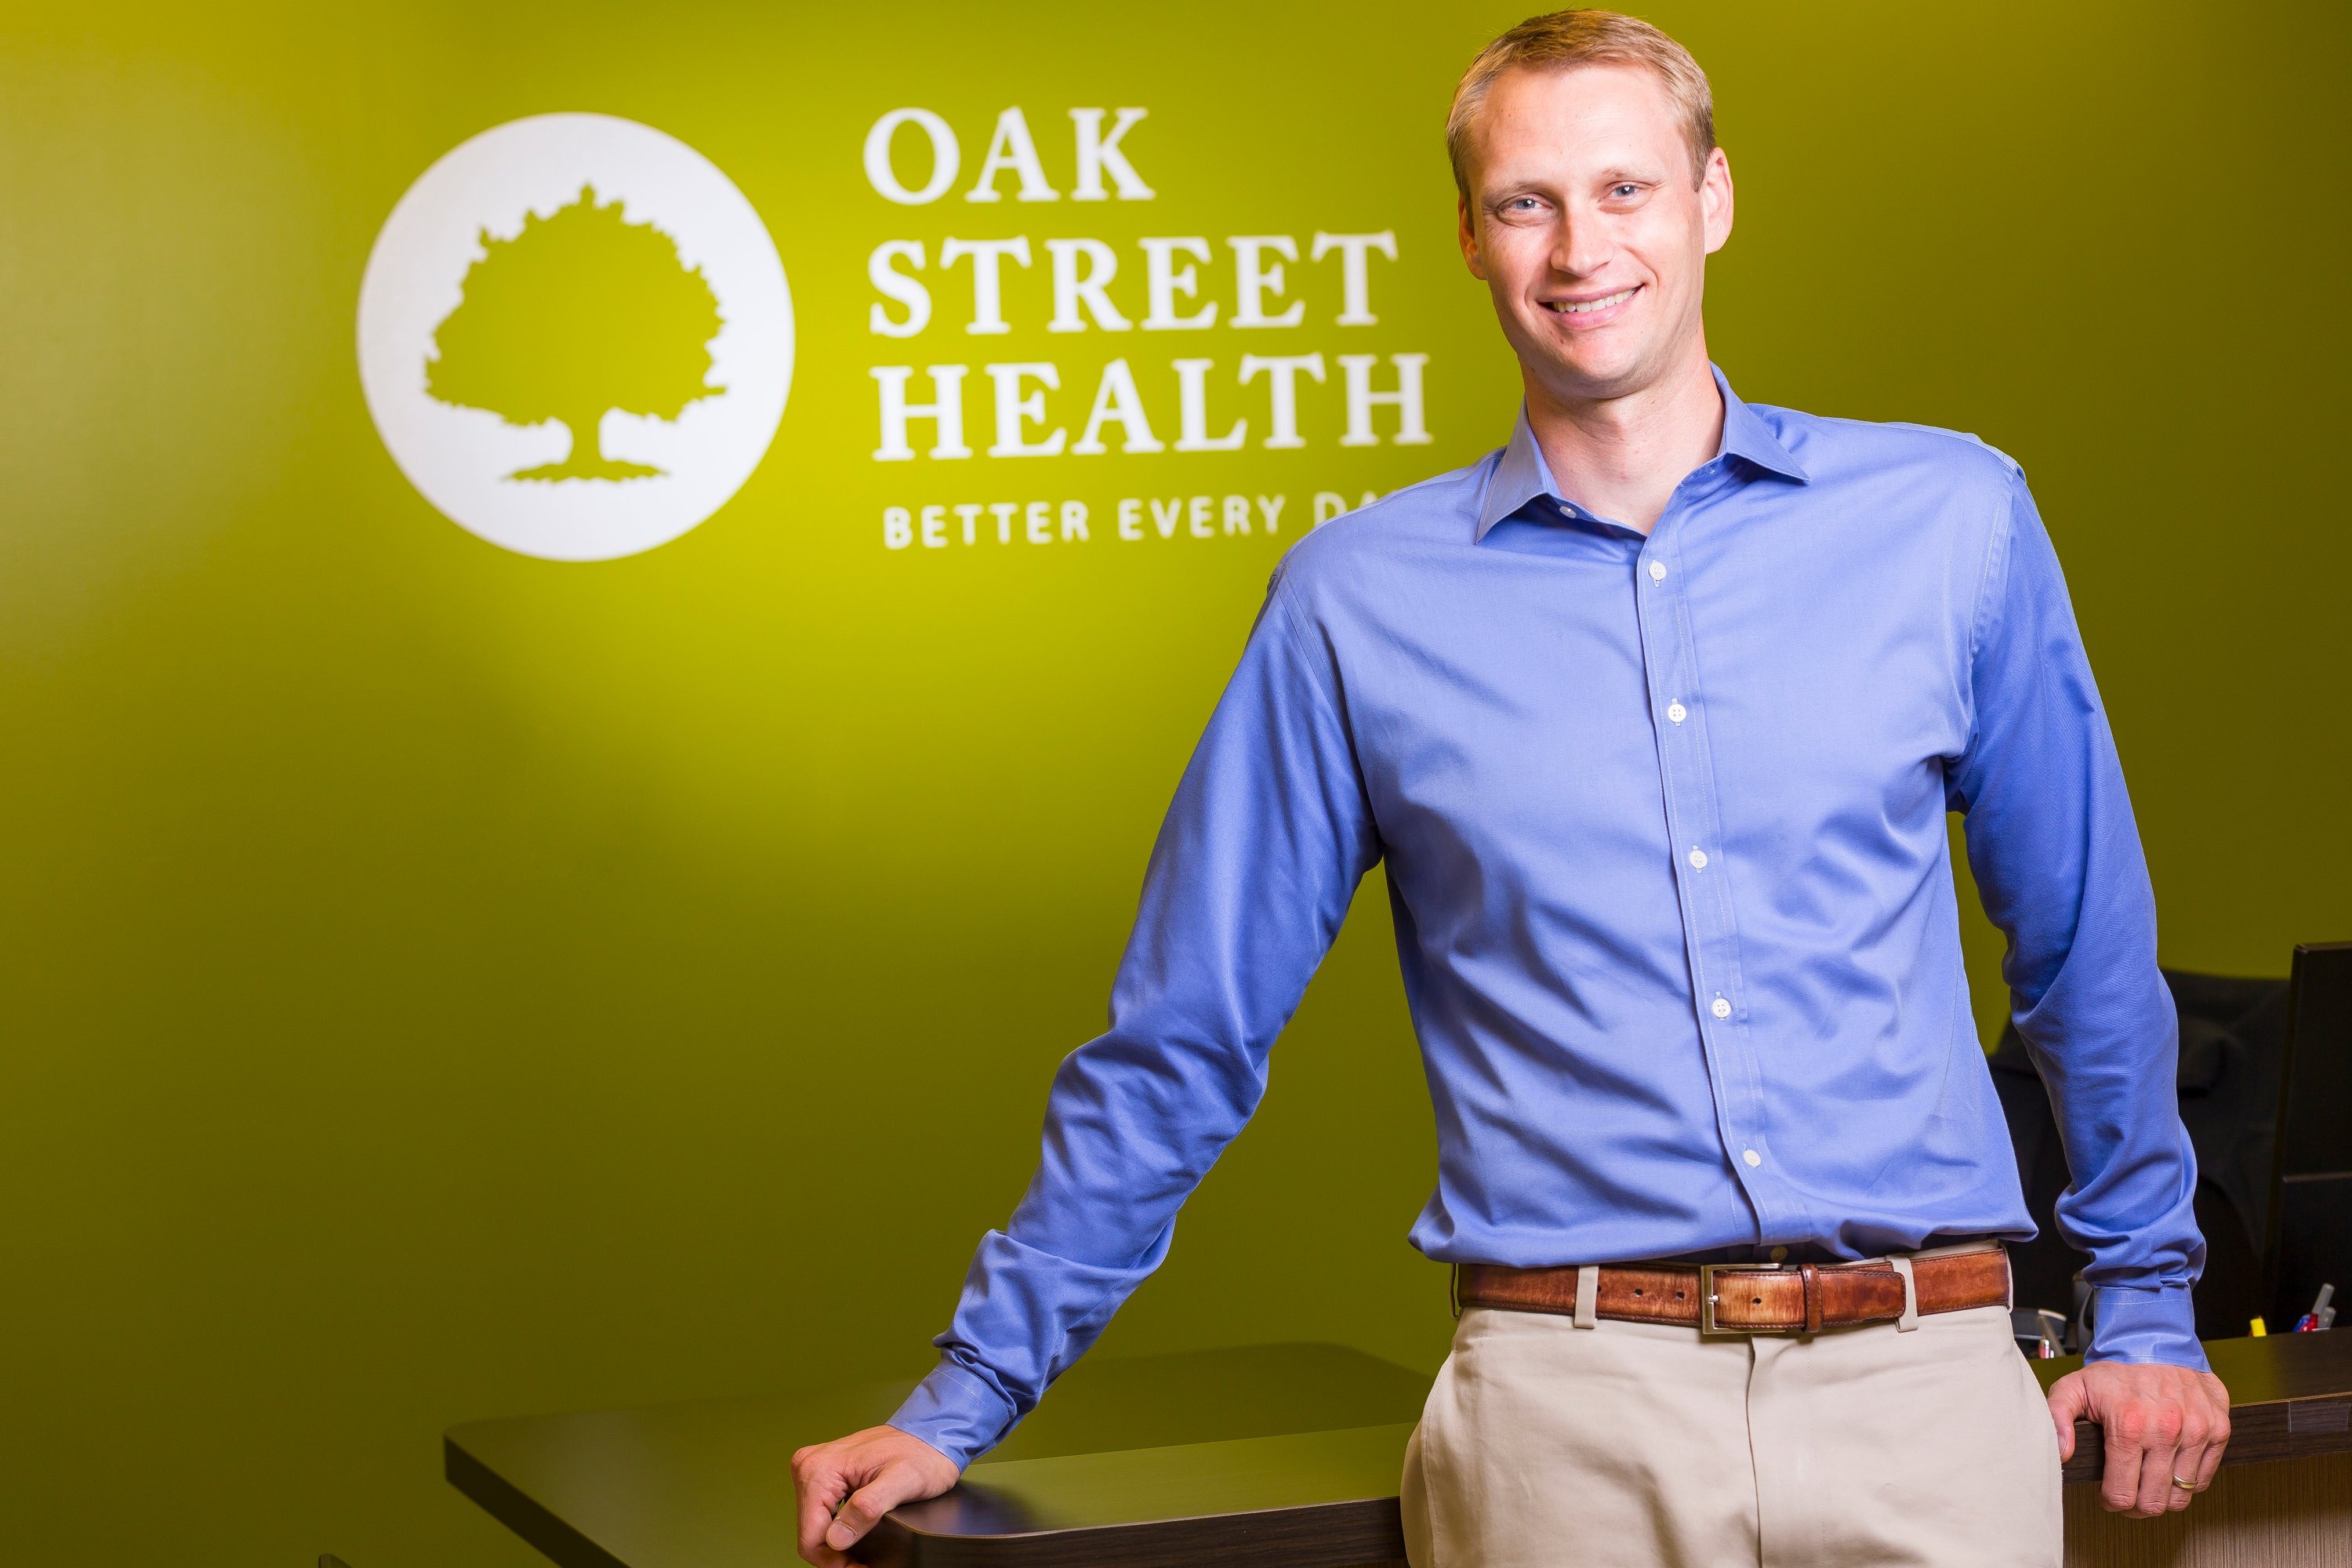 What Is Oak Street Health